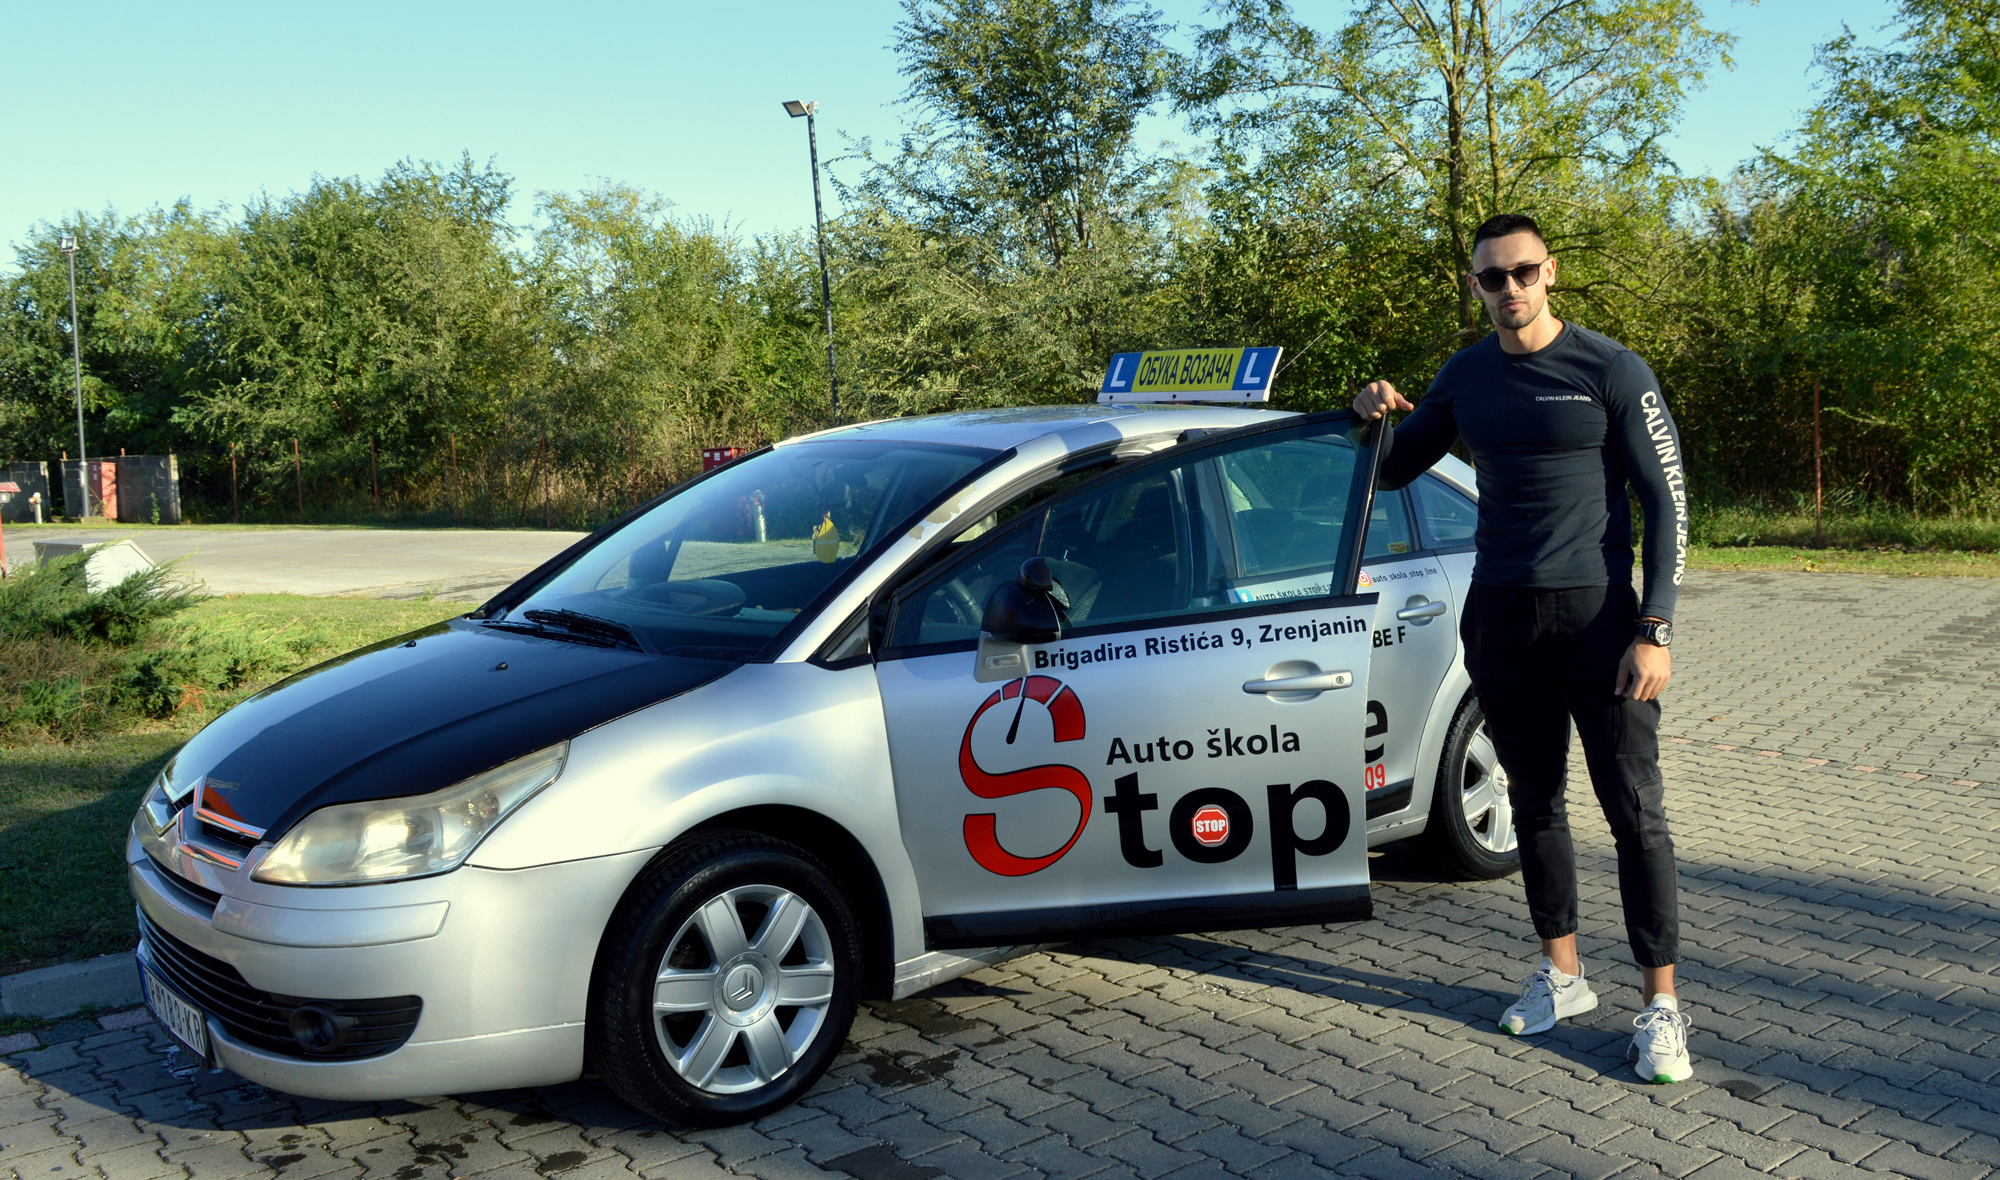 Provereno najbrža obuka uz Stop line i instruktora Sašu Bogunovića